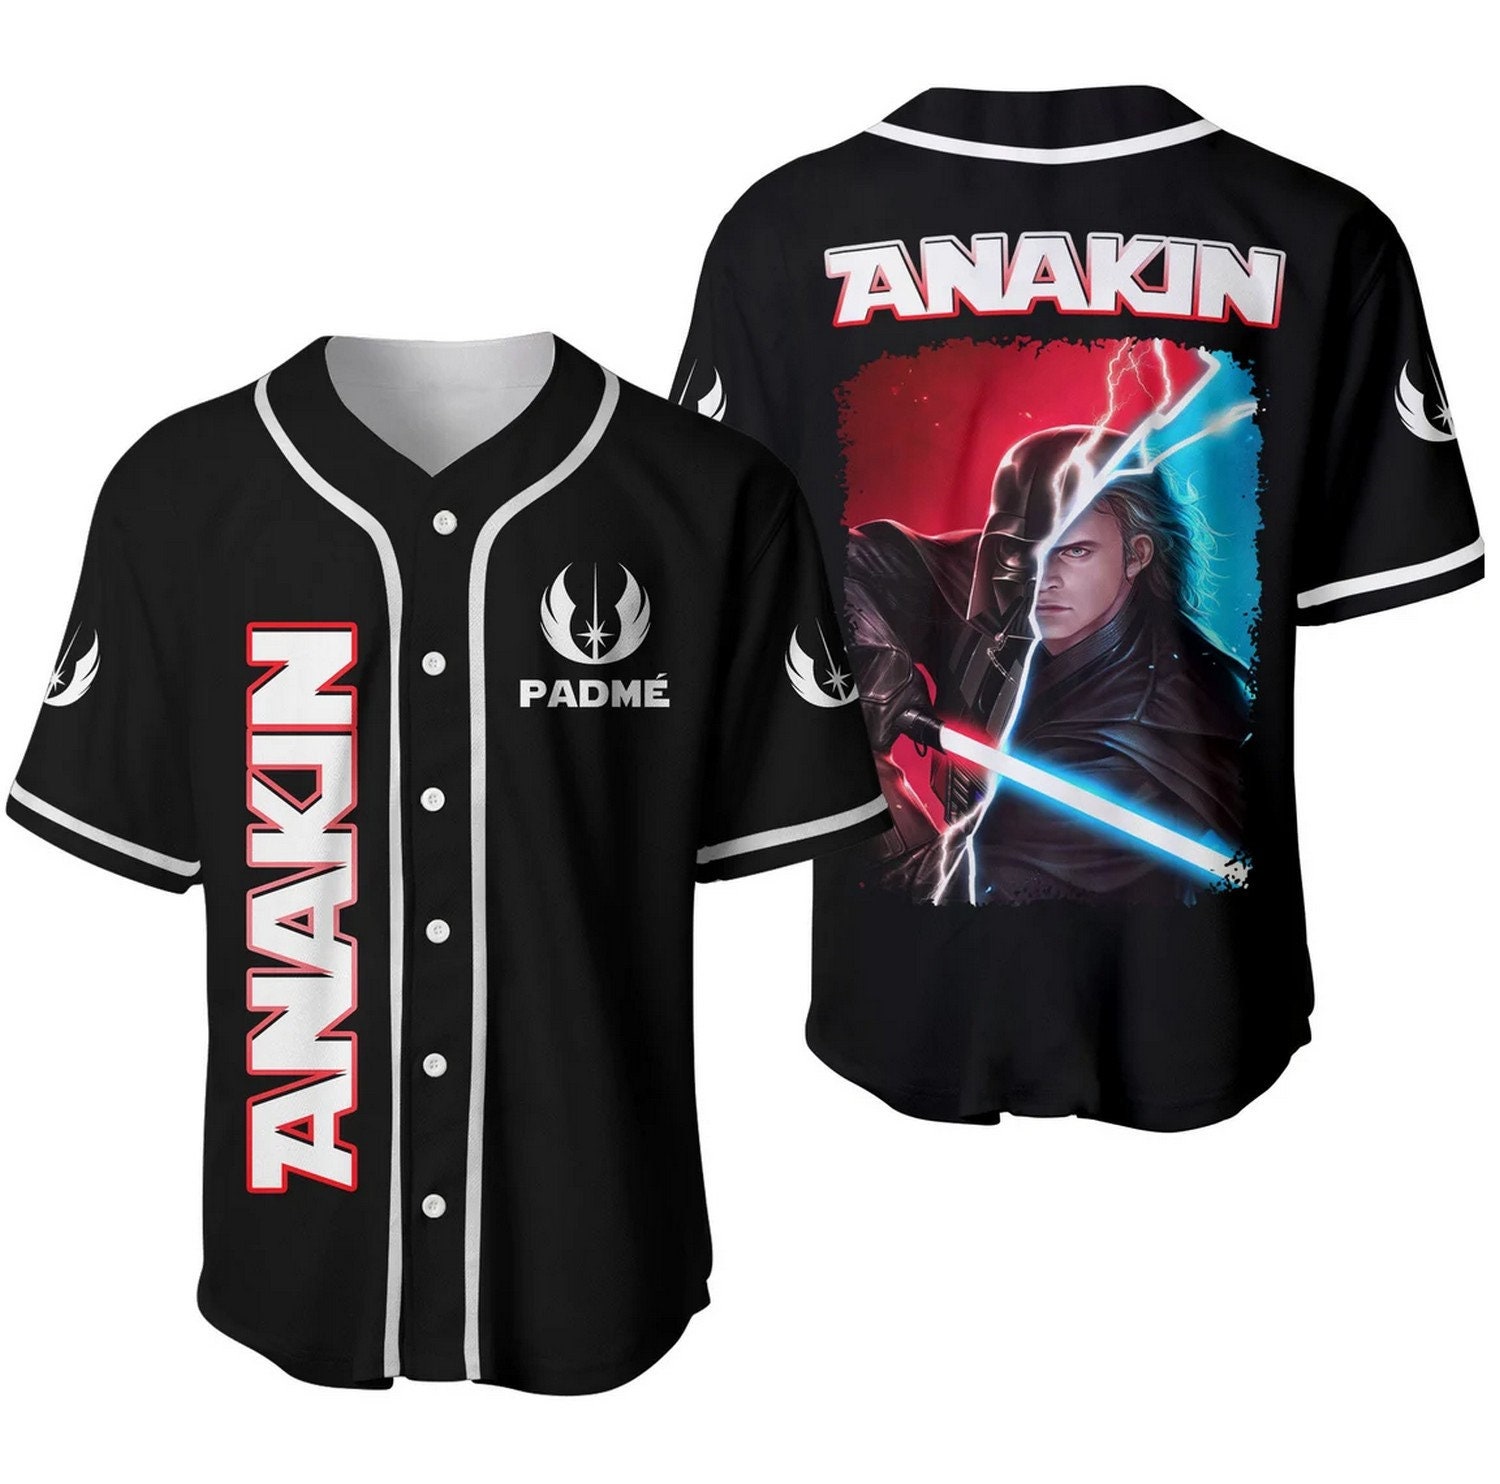 Star Wars Anakin Skywalker Darth Baseball Jersey